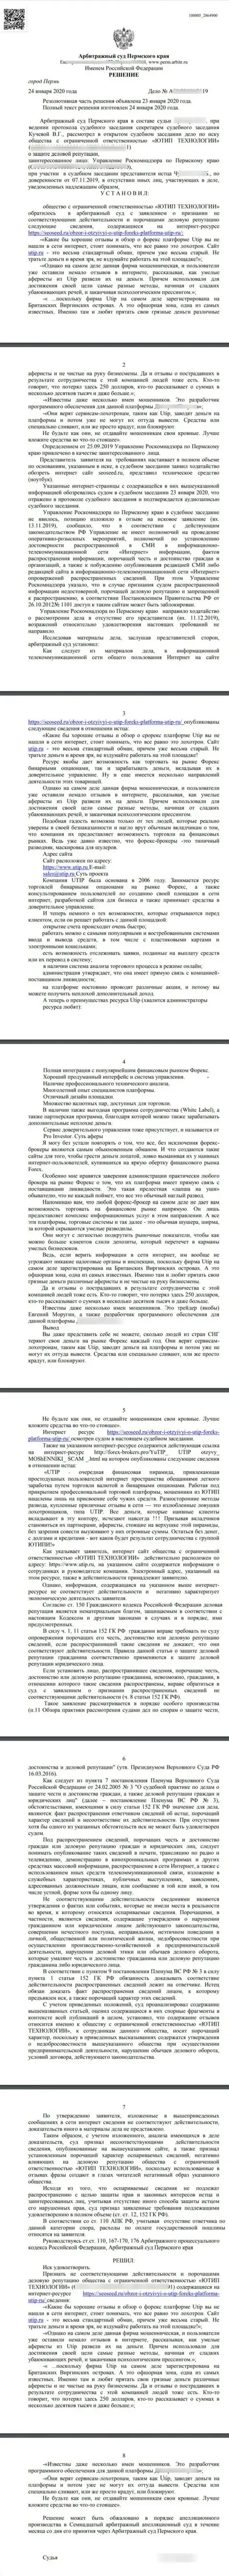 Судебный иск мошенников UTIP Ru в отношении web-портала SeoSeed, удовлетворенный самым справедливым судом